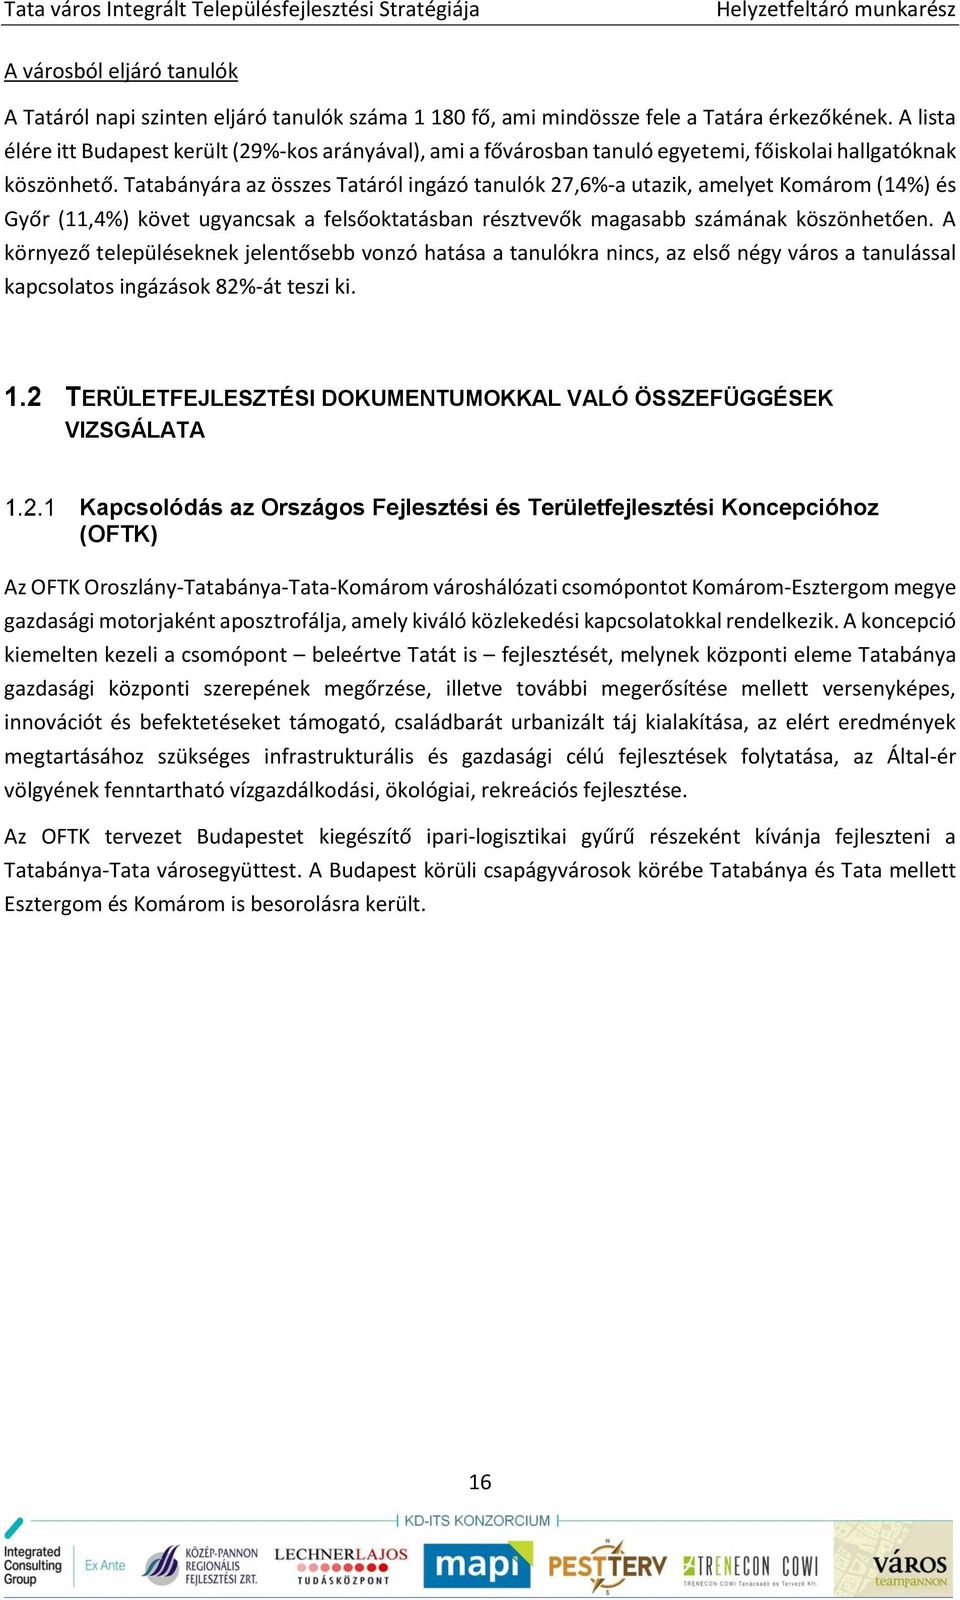 Tatabányára az összes Tatáról ingázó tanulók 27,6%-a utazik, amelyet Komárom (14%) és Győr (11,4%) követ ugyancsak a felsőoktatásban résztvevők magasabb számának köszönhetően.